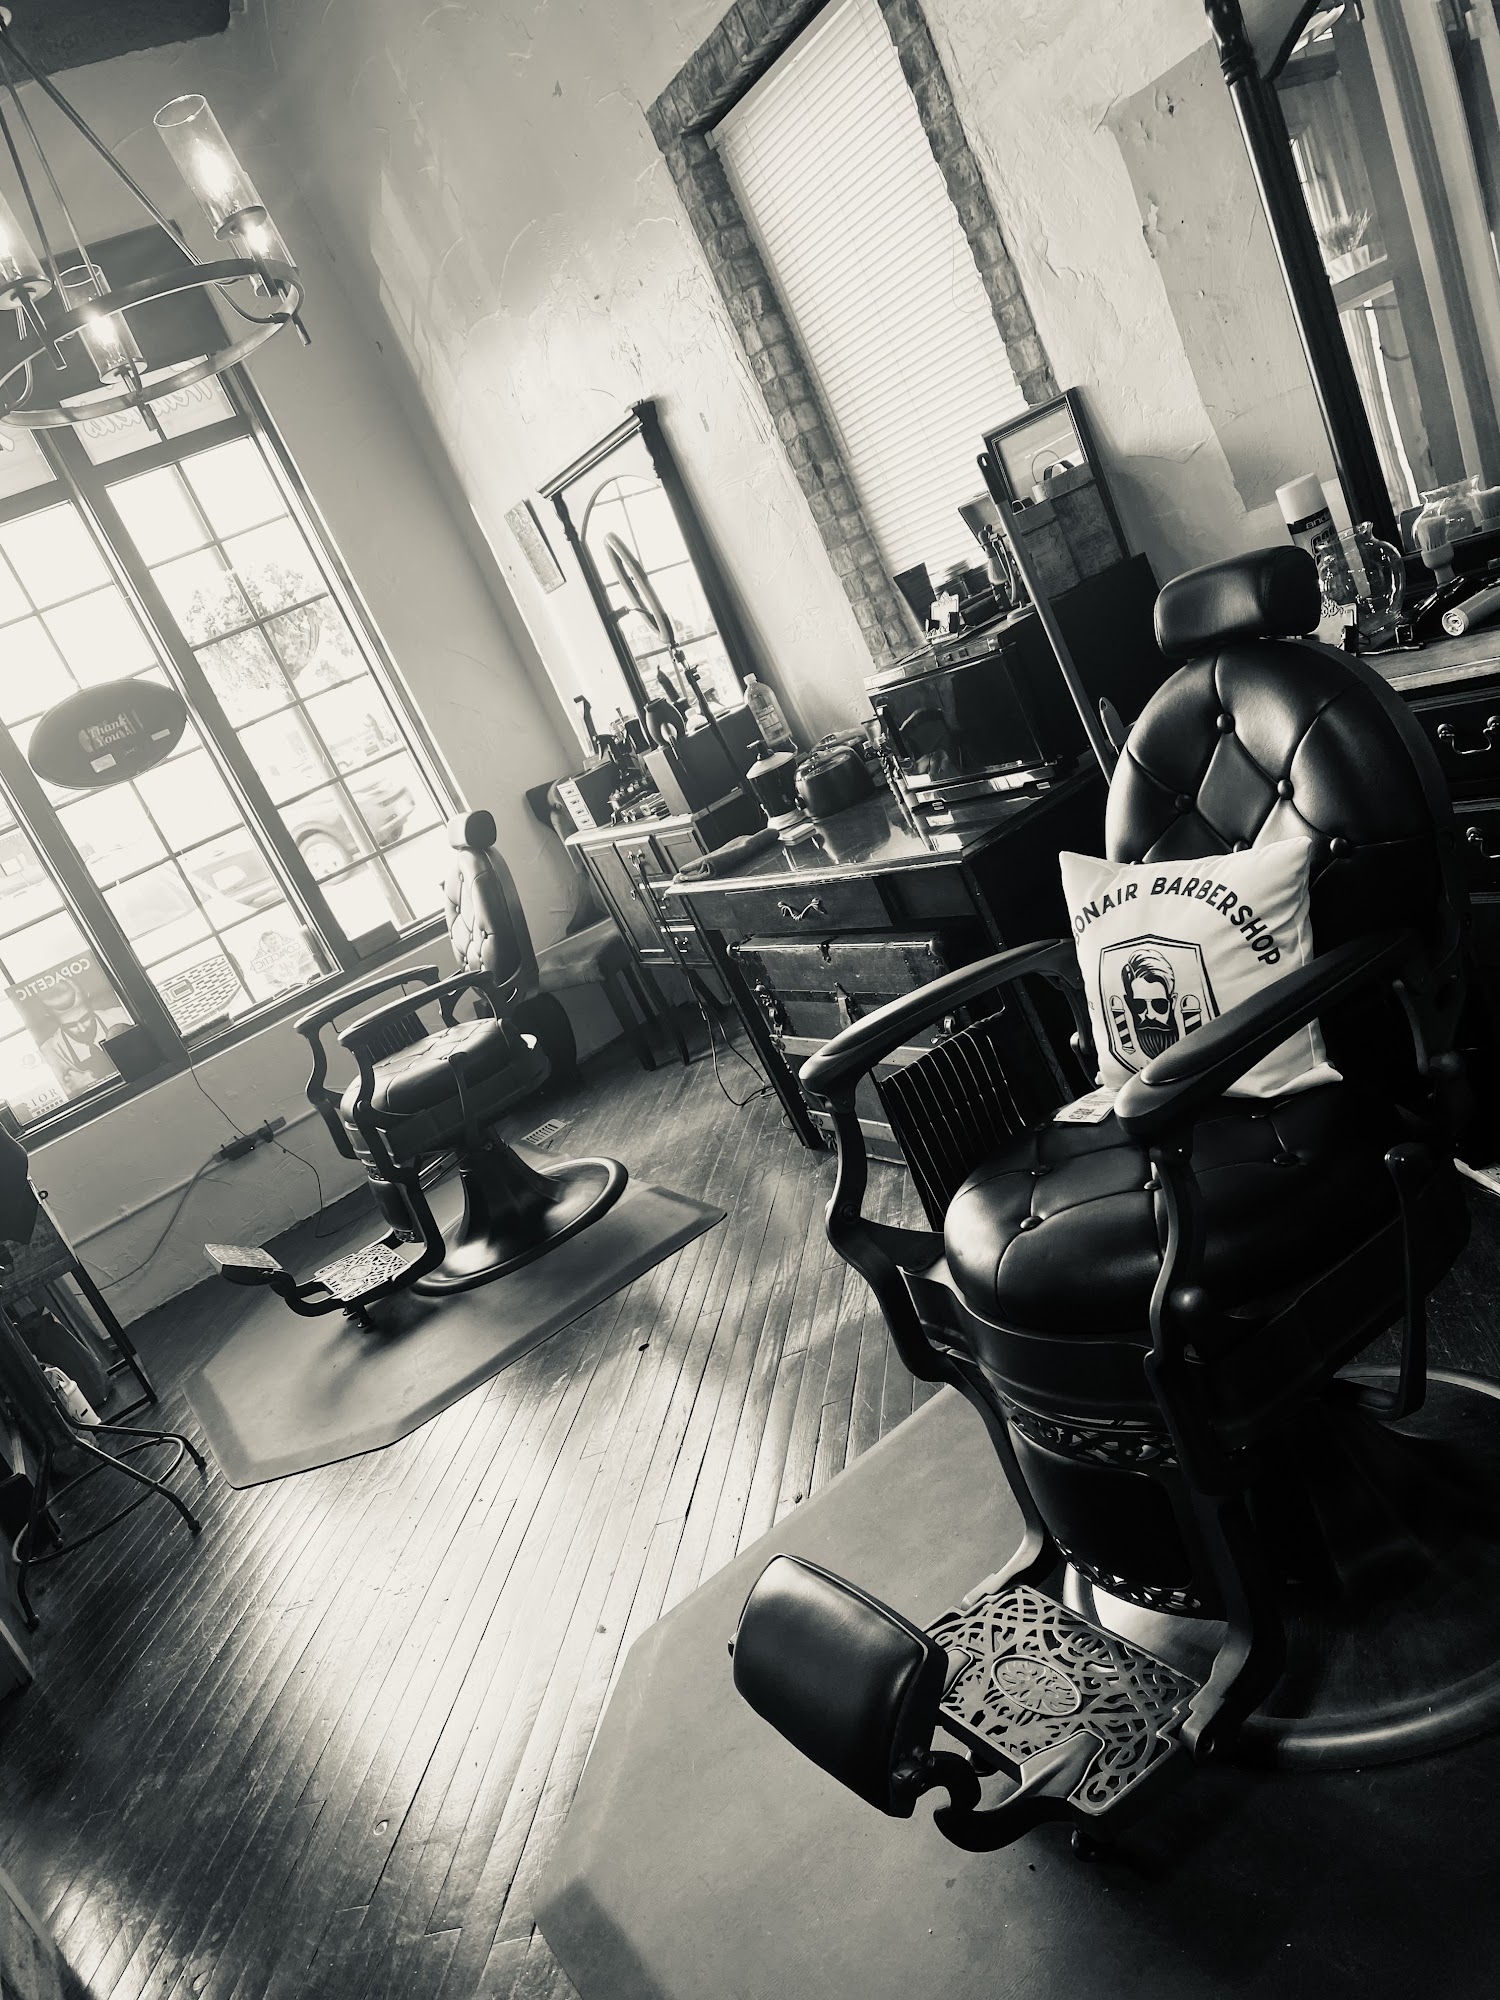 The Debonair Barbershop